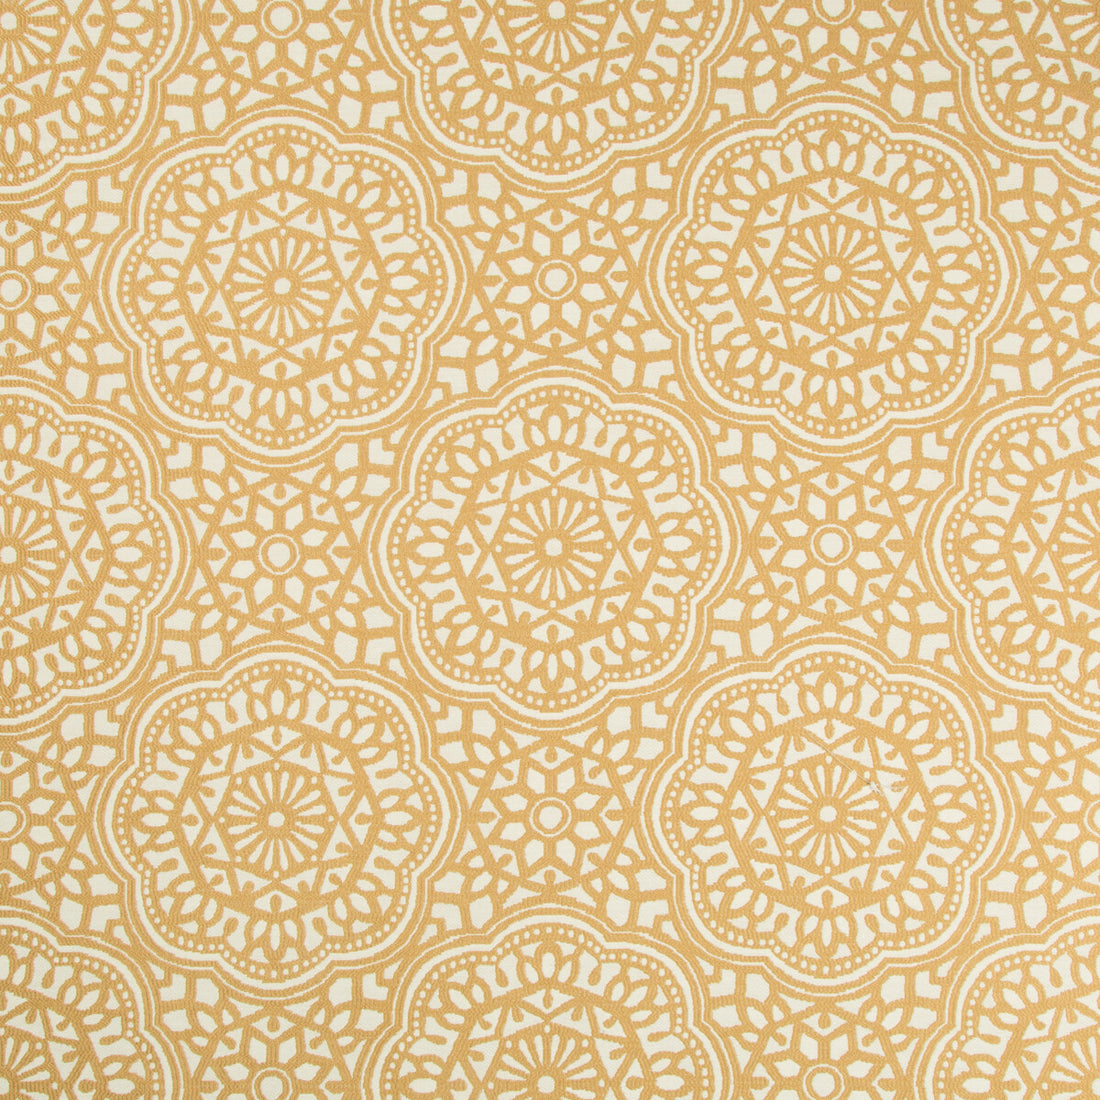 Kravet Design fabric in 34724-416 color - pattern 34724.416.0 - by Kravet Design